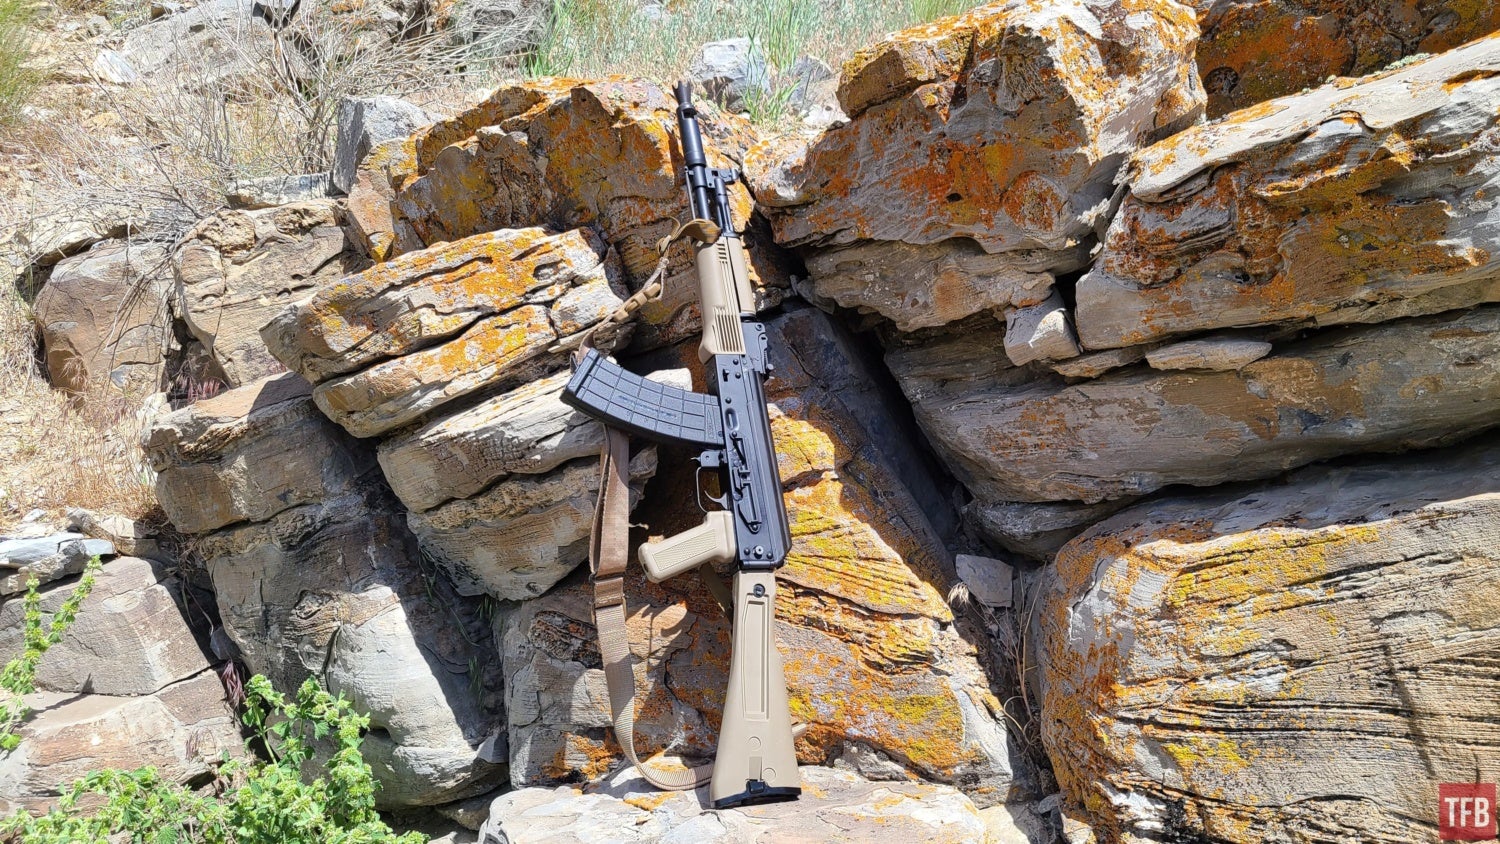 Redemption? TFB PSA AK-105 Review (Part 2)